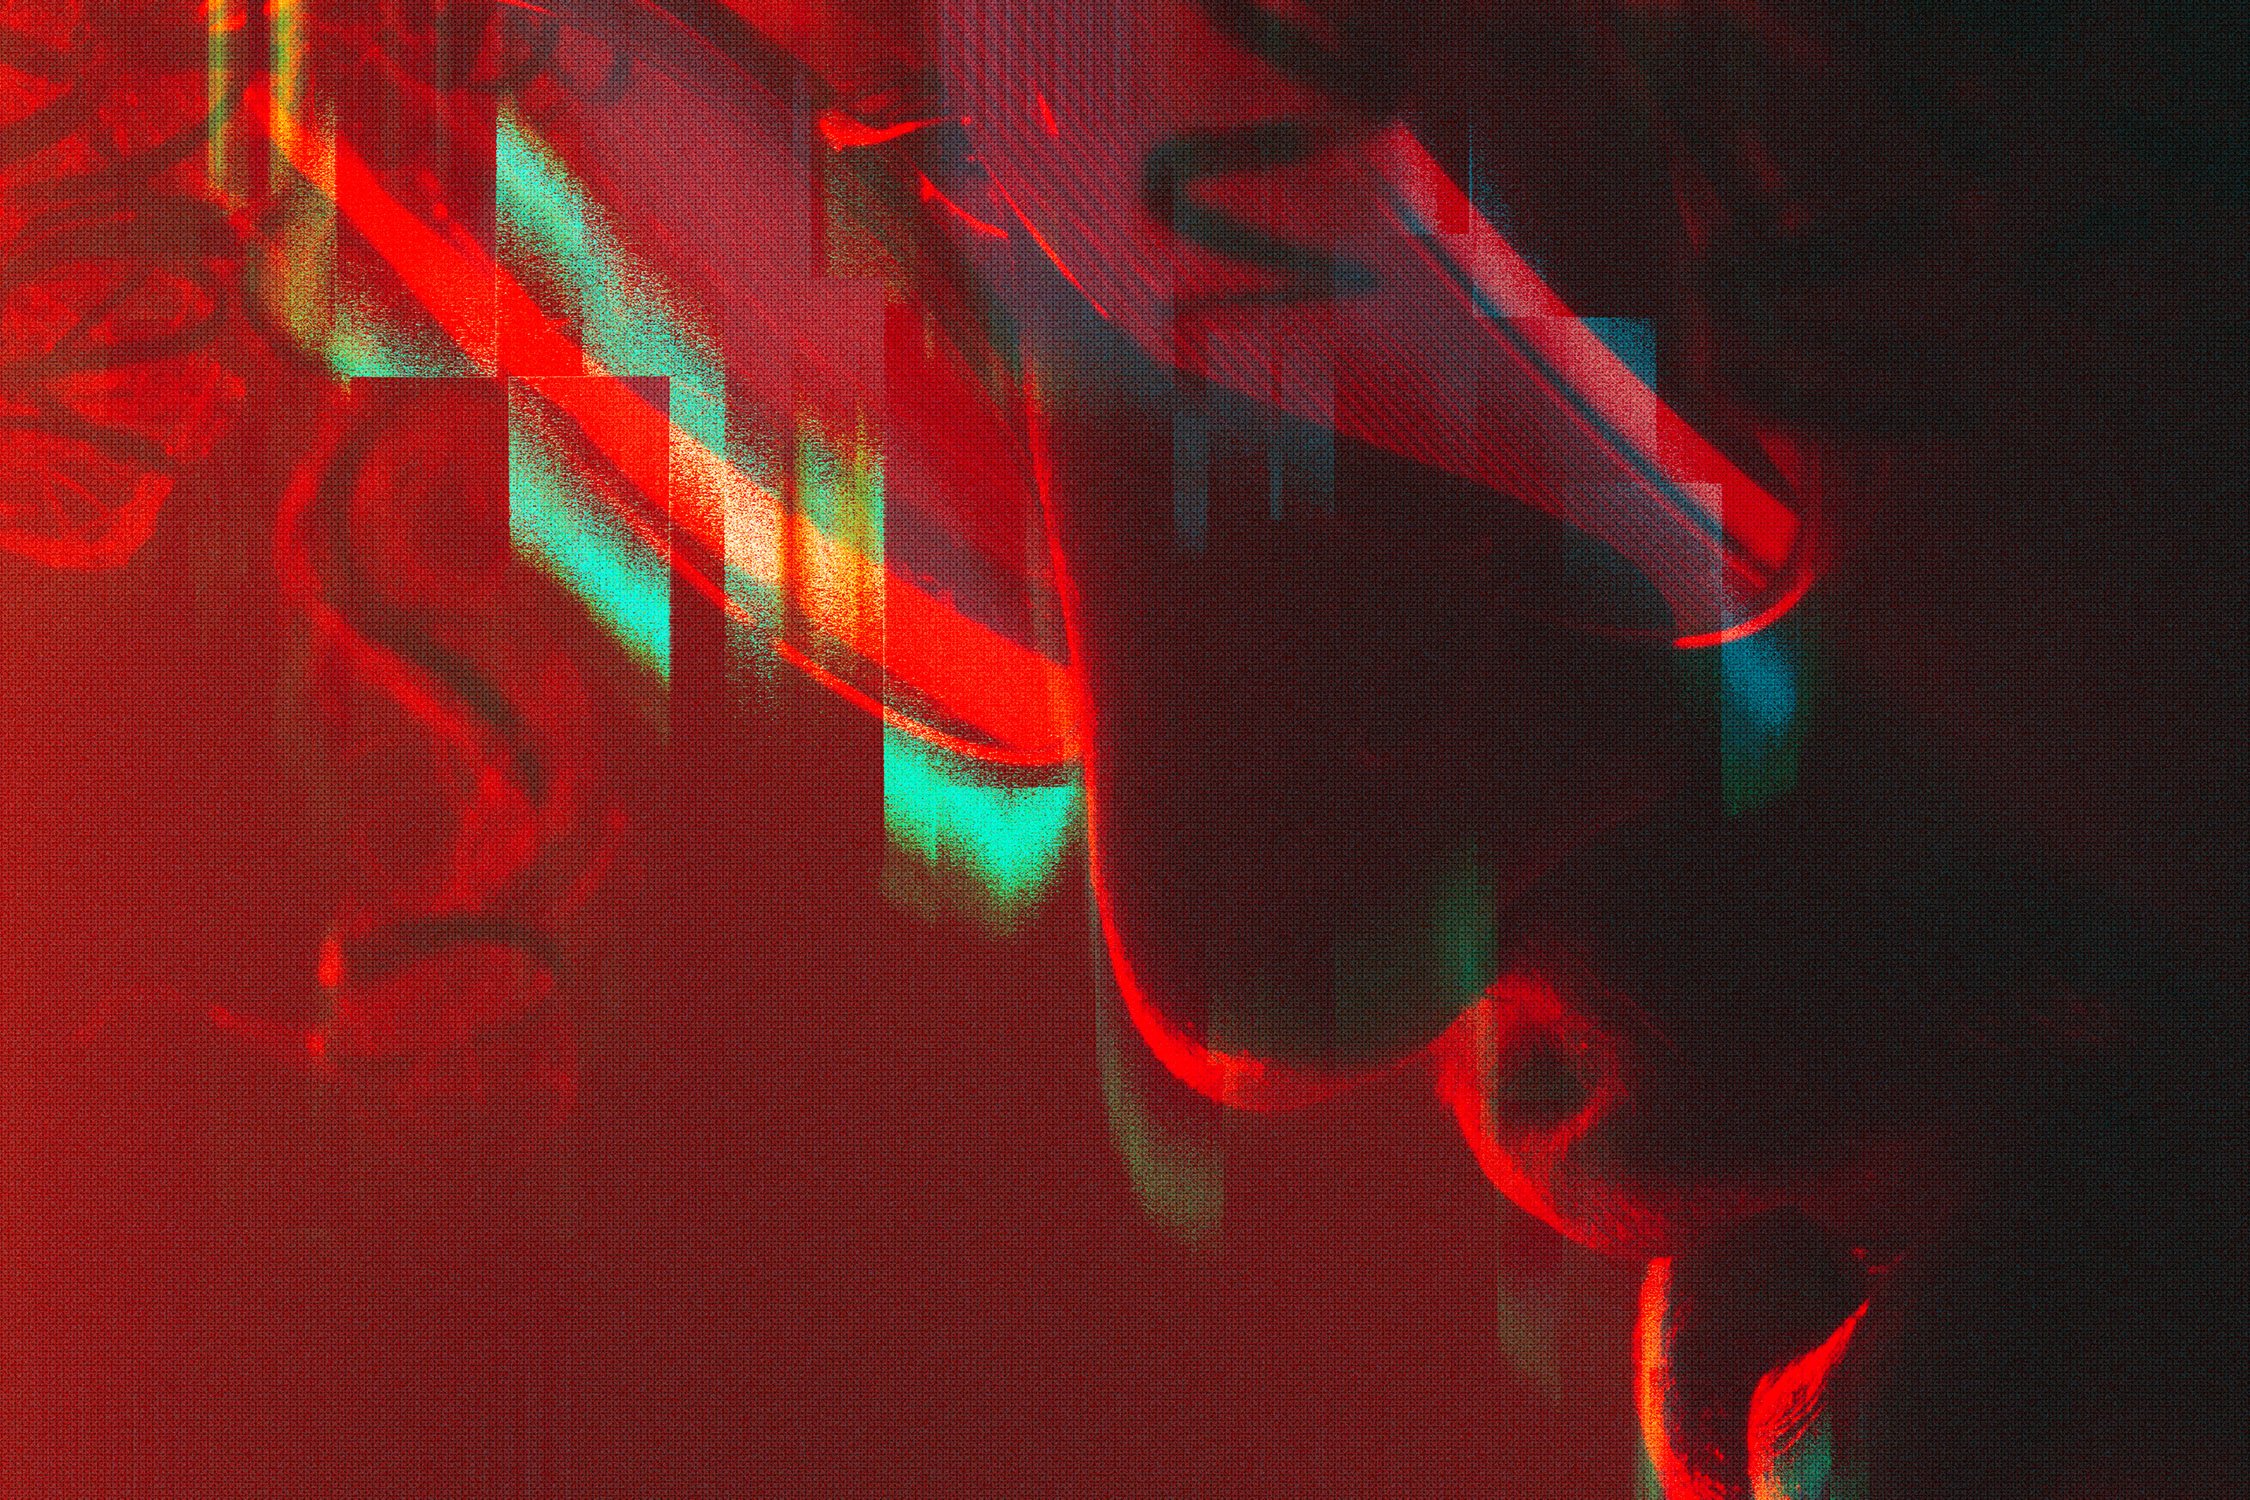 distortion–glitch photo effects 08 915